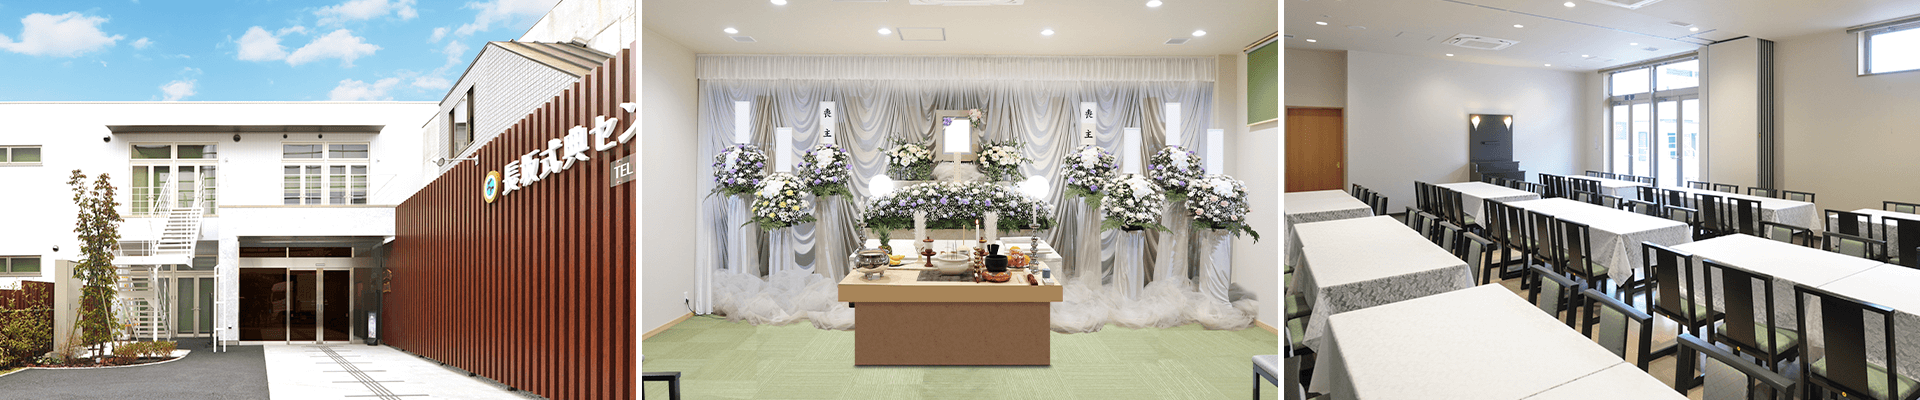 葬儀・葬式・家族葬なら16.5万円からできる長坂式典センター 立川市の葬儀場一覧